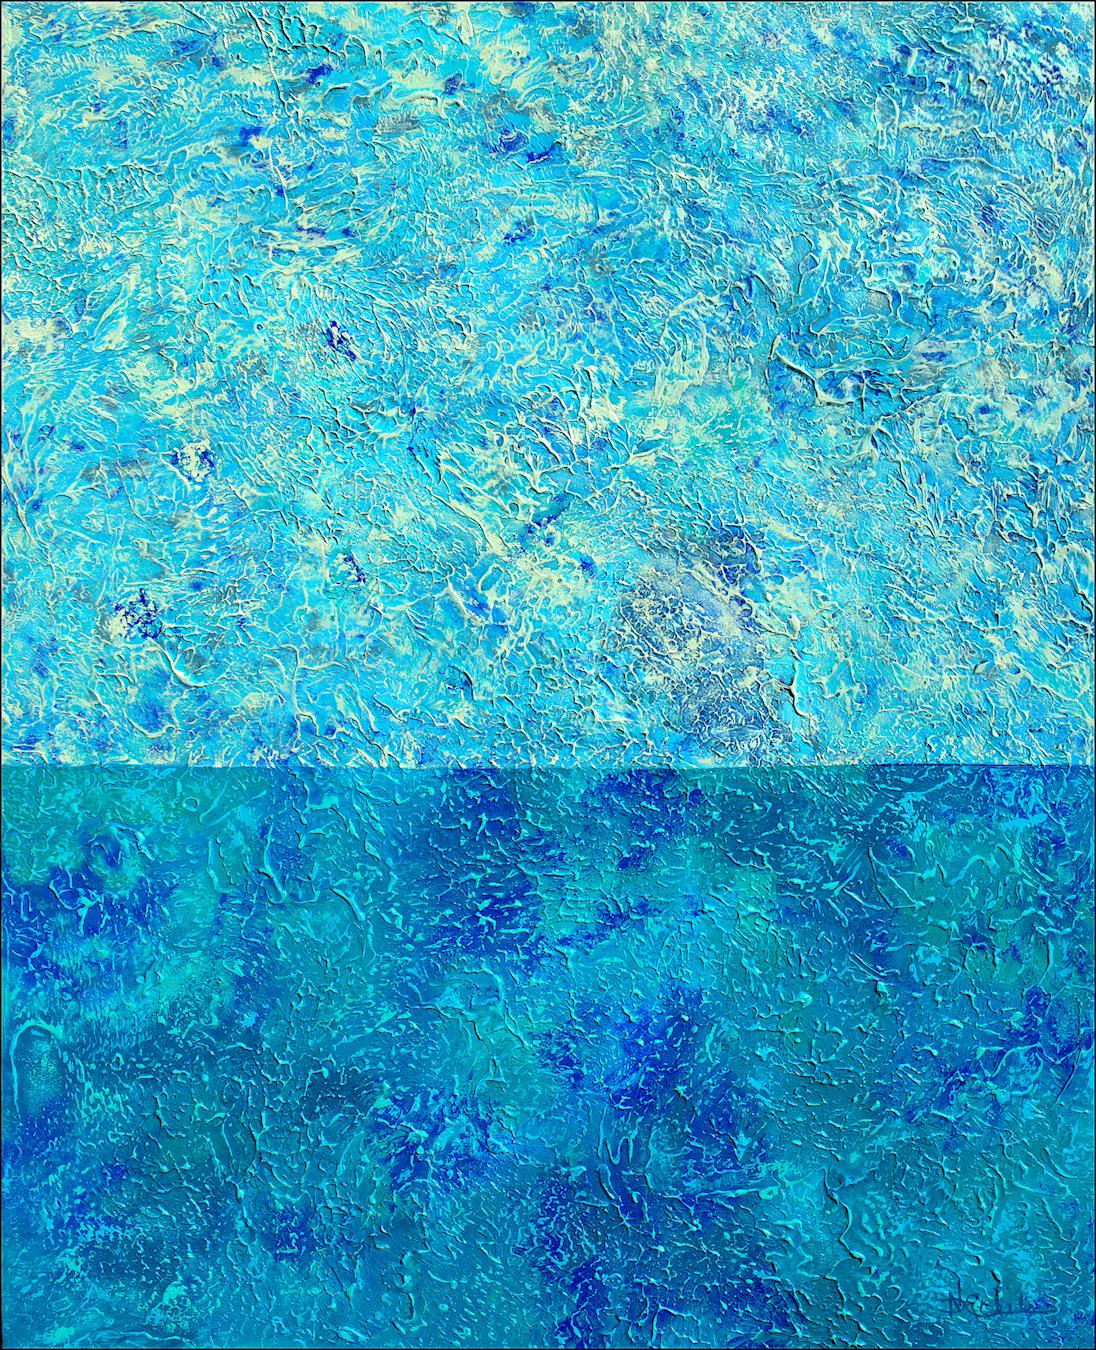 Abstract Painting Nancy Eckels - « A Serenely Quiet Sea » - Technique mixte abstraite avec texture bleu sarcelle et turquoise